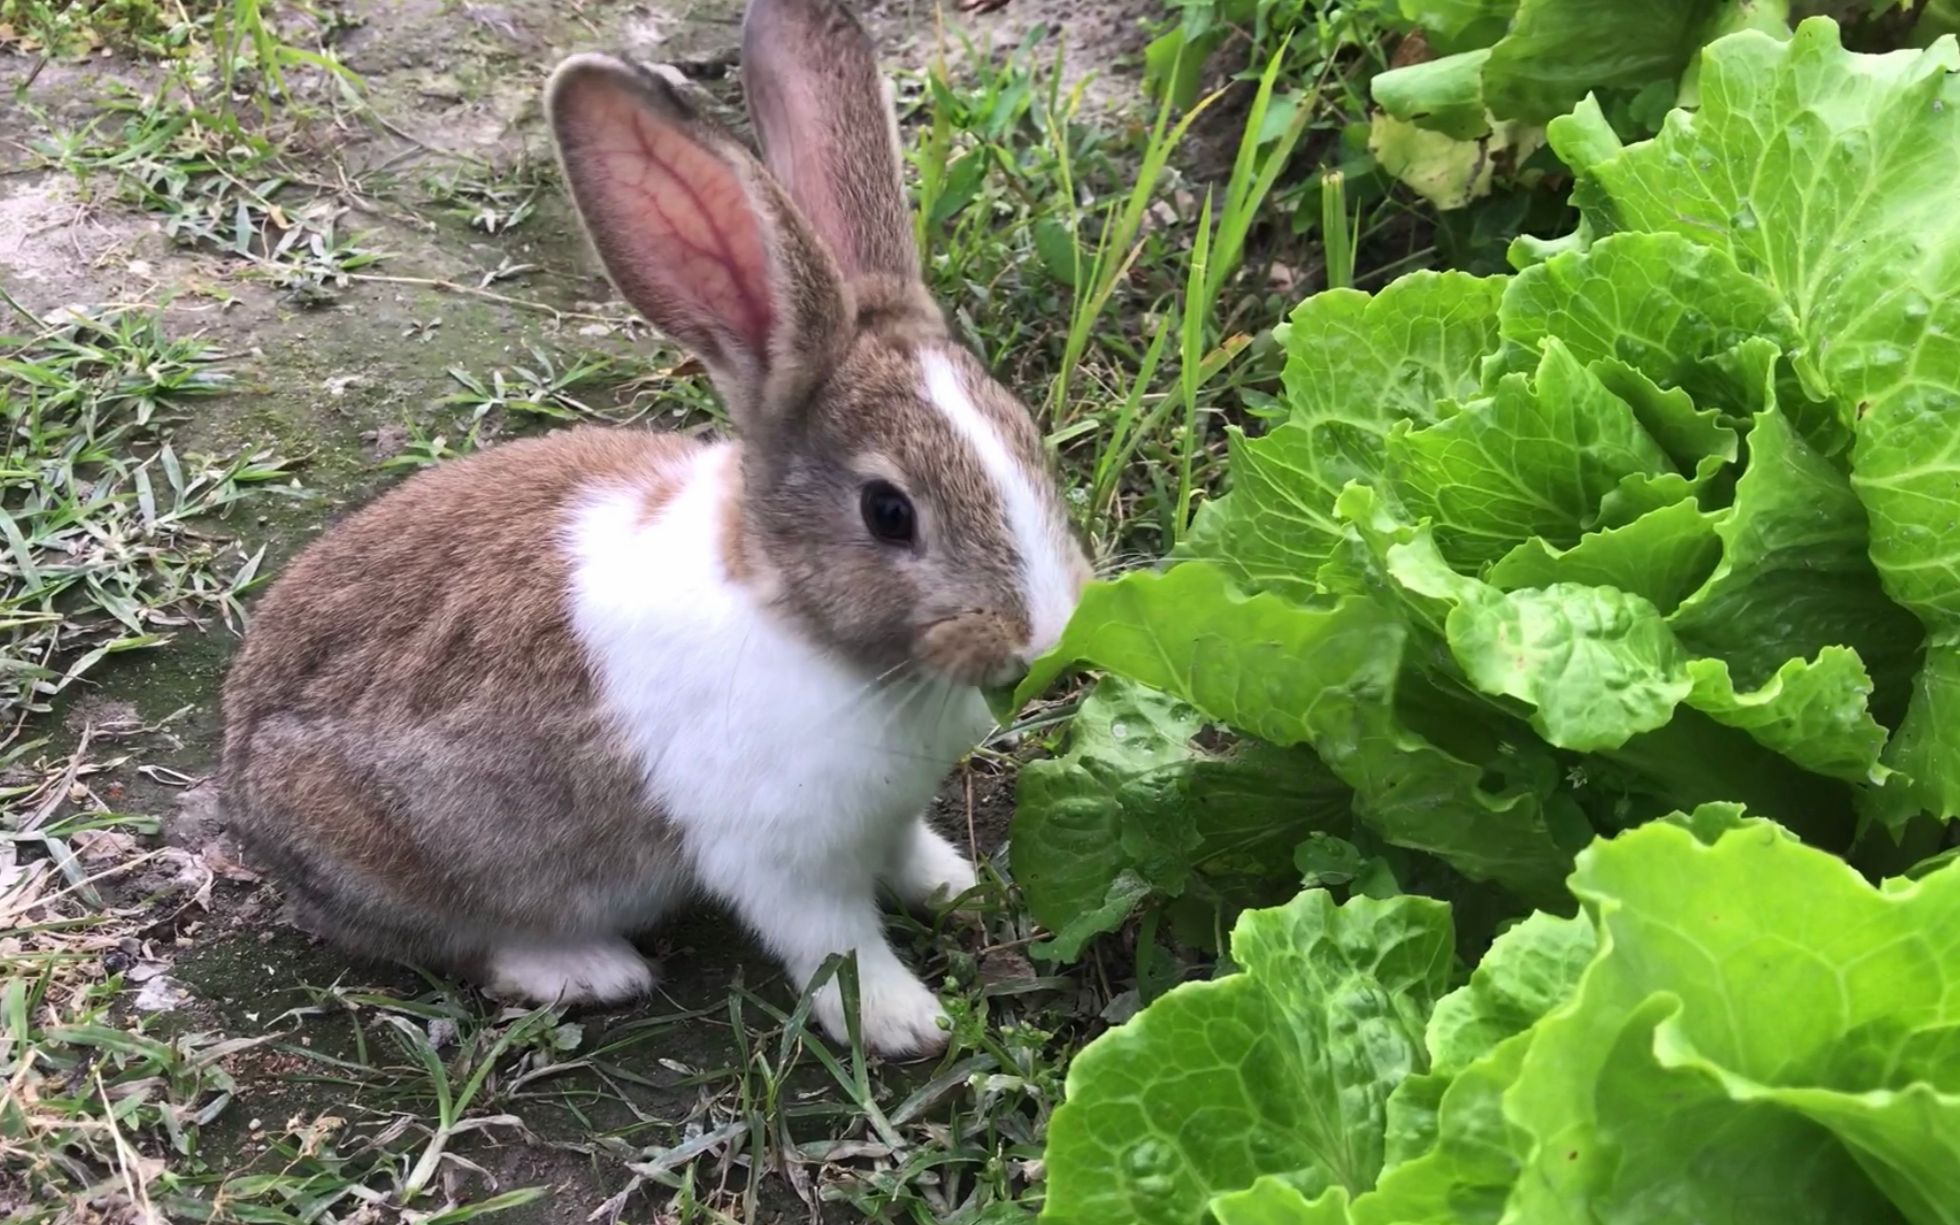 棉尾兔吃草的小兔 库存照片. 图片 包括有 棉尾兔, 春天, 绿色, 复活节, 耳朵, 野生生物, 敌意 - 28887436